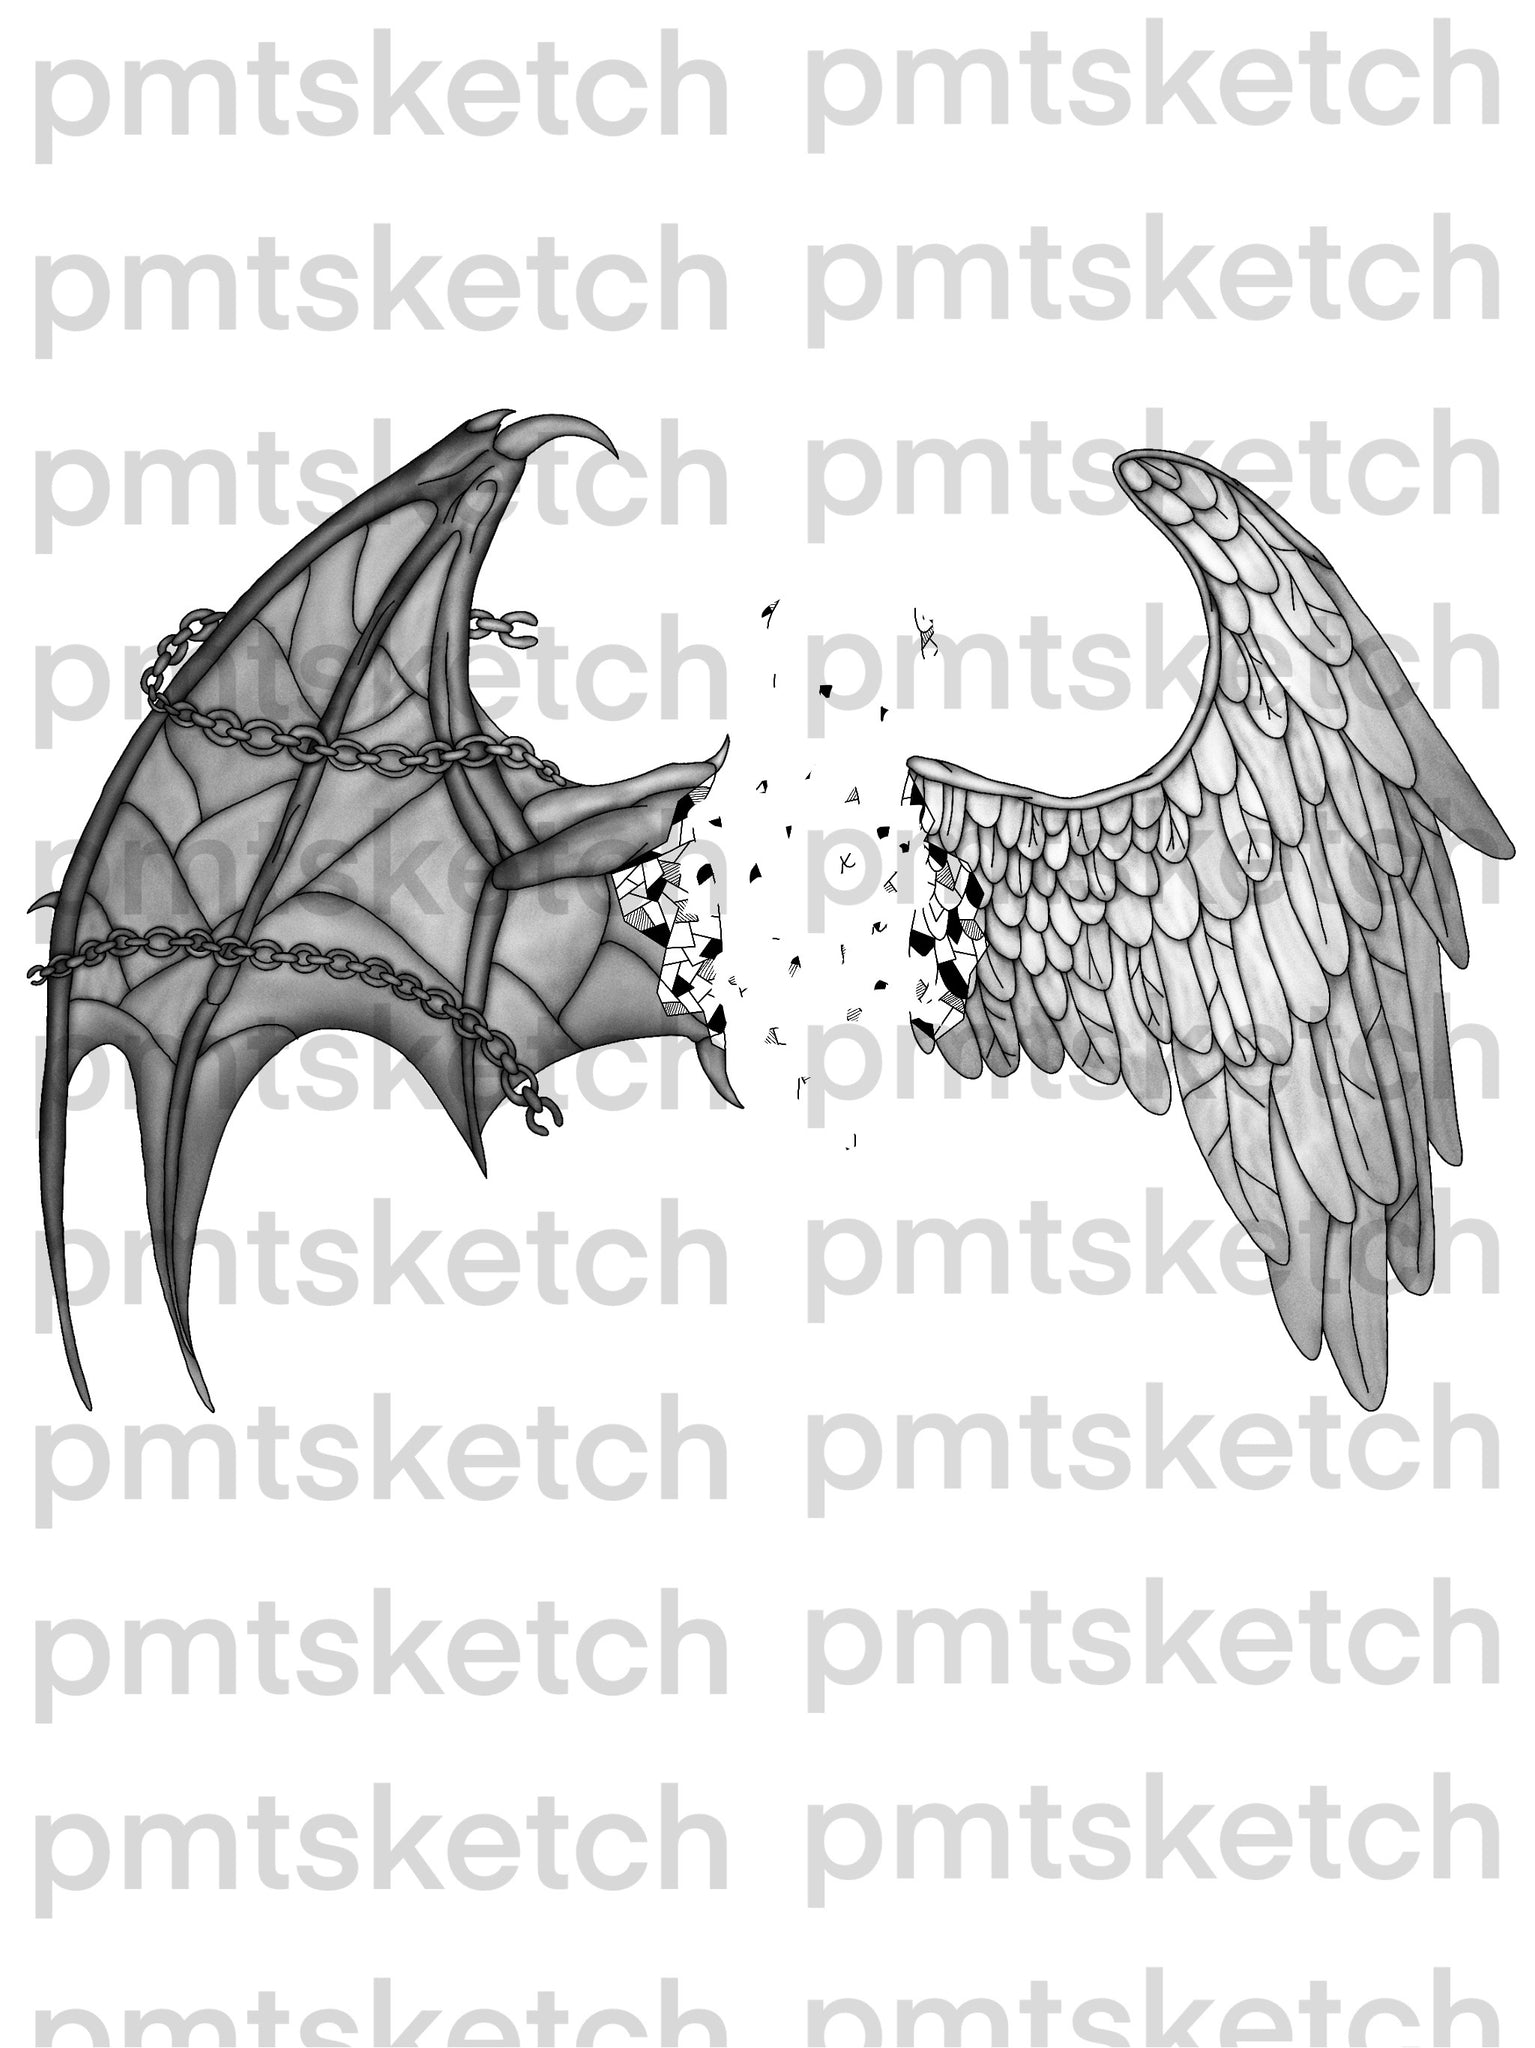 Shaded Angel / Demon Wings